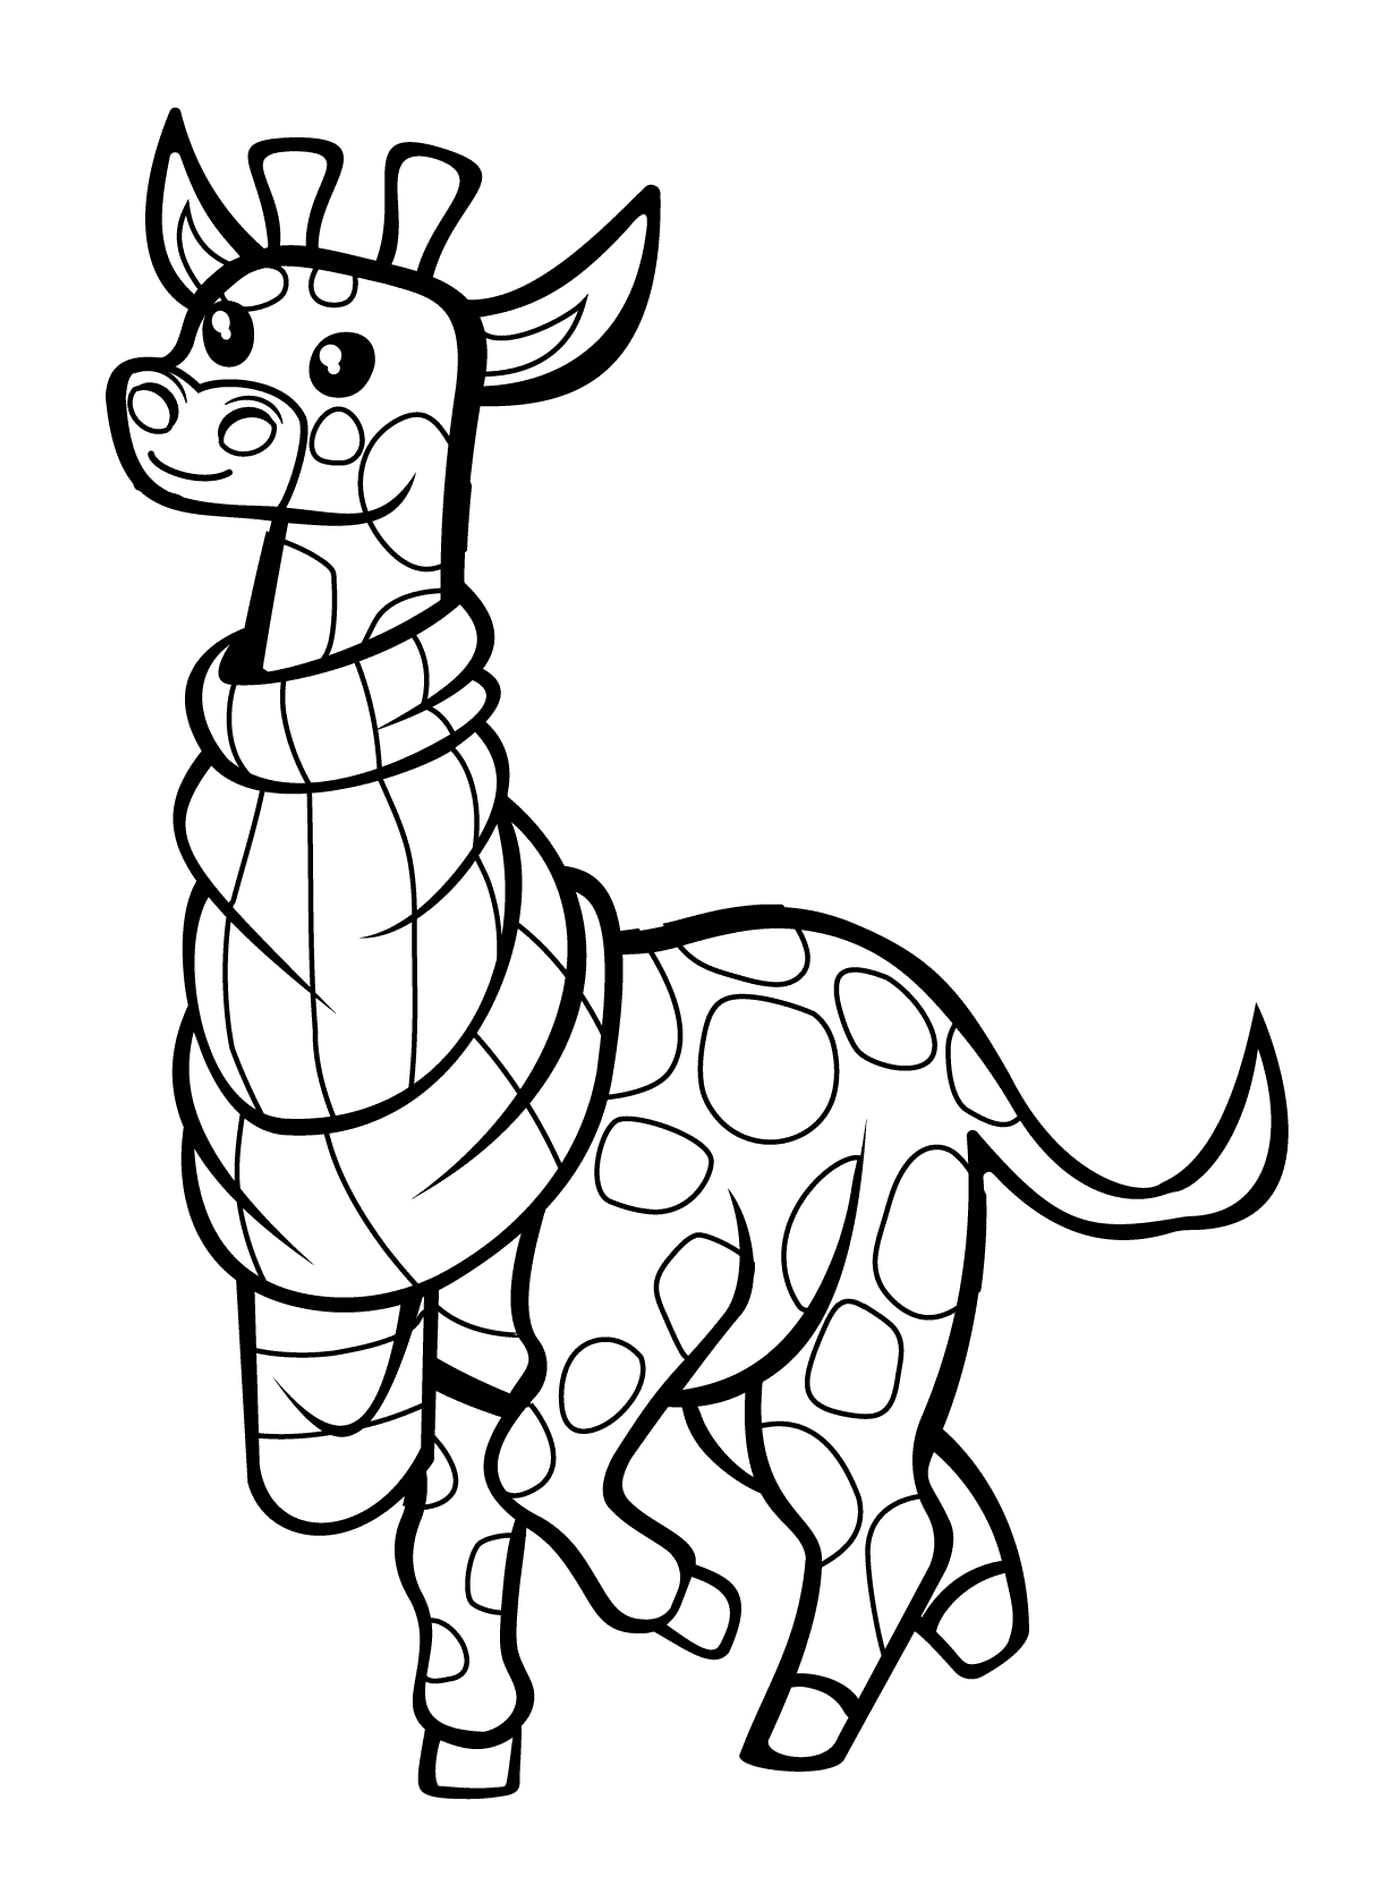  Una jirafa con bufanda 